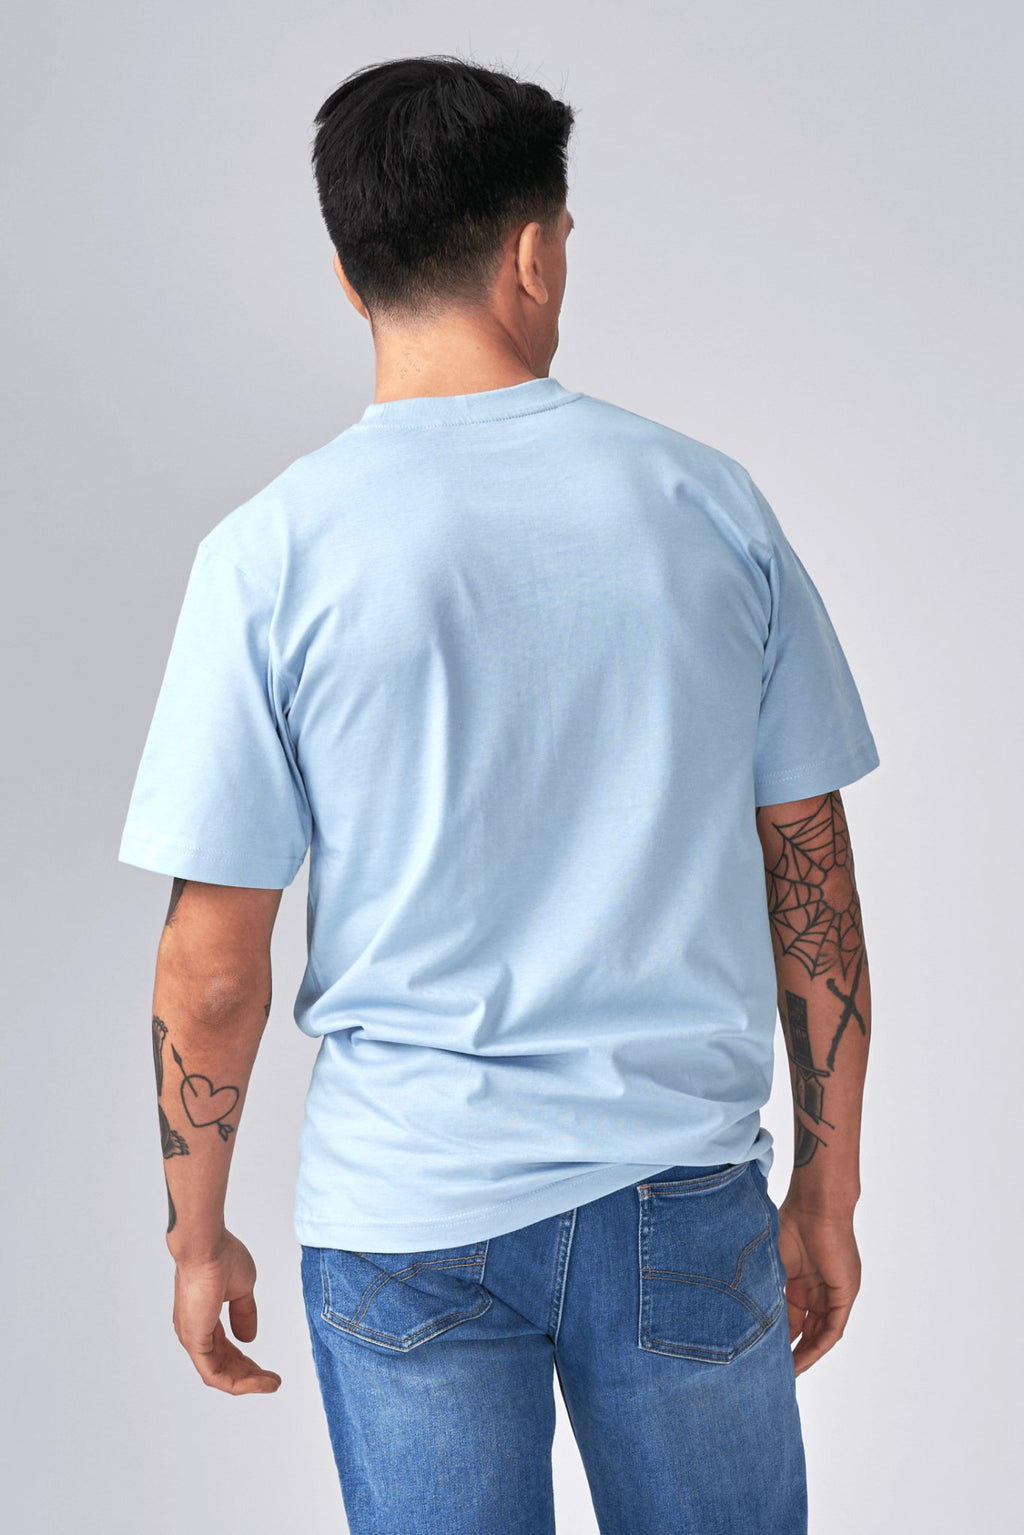 Camiseta de gran tamaño - Azul claro